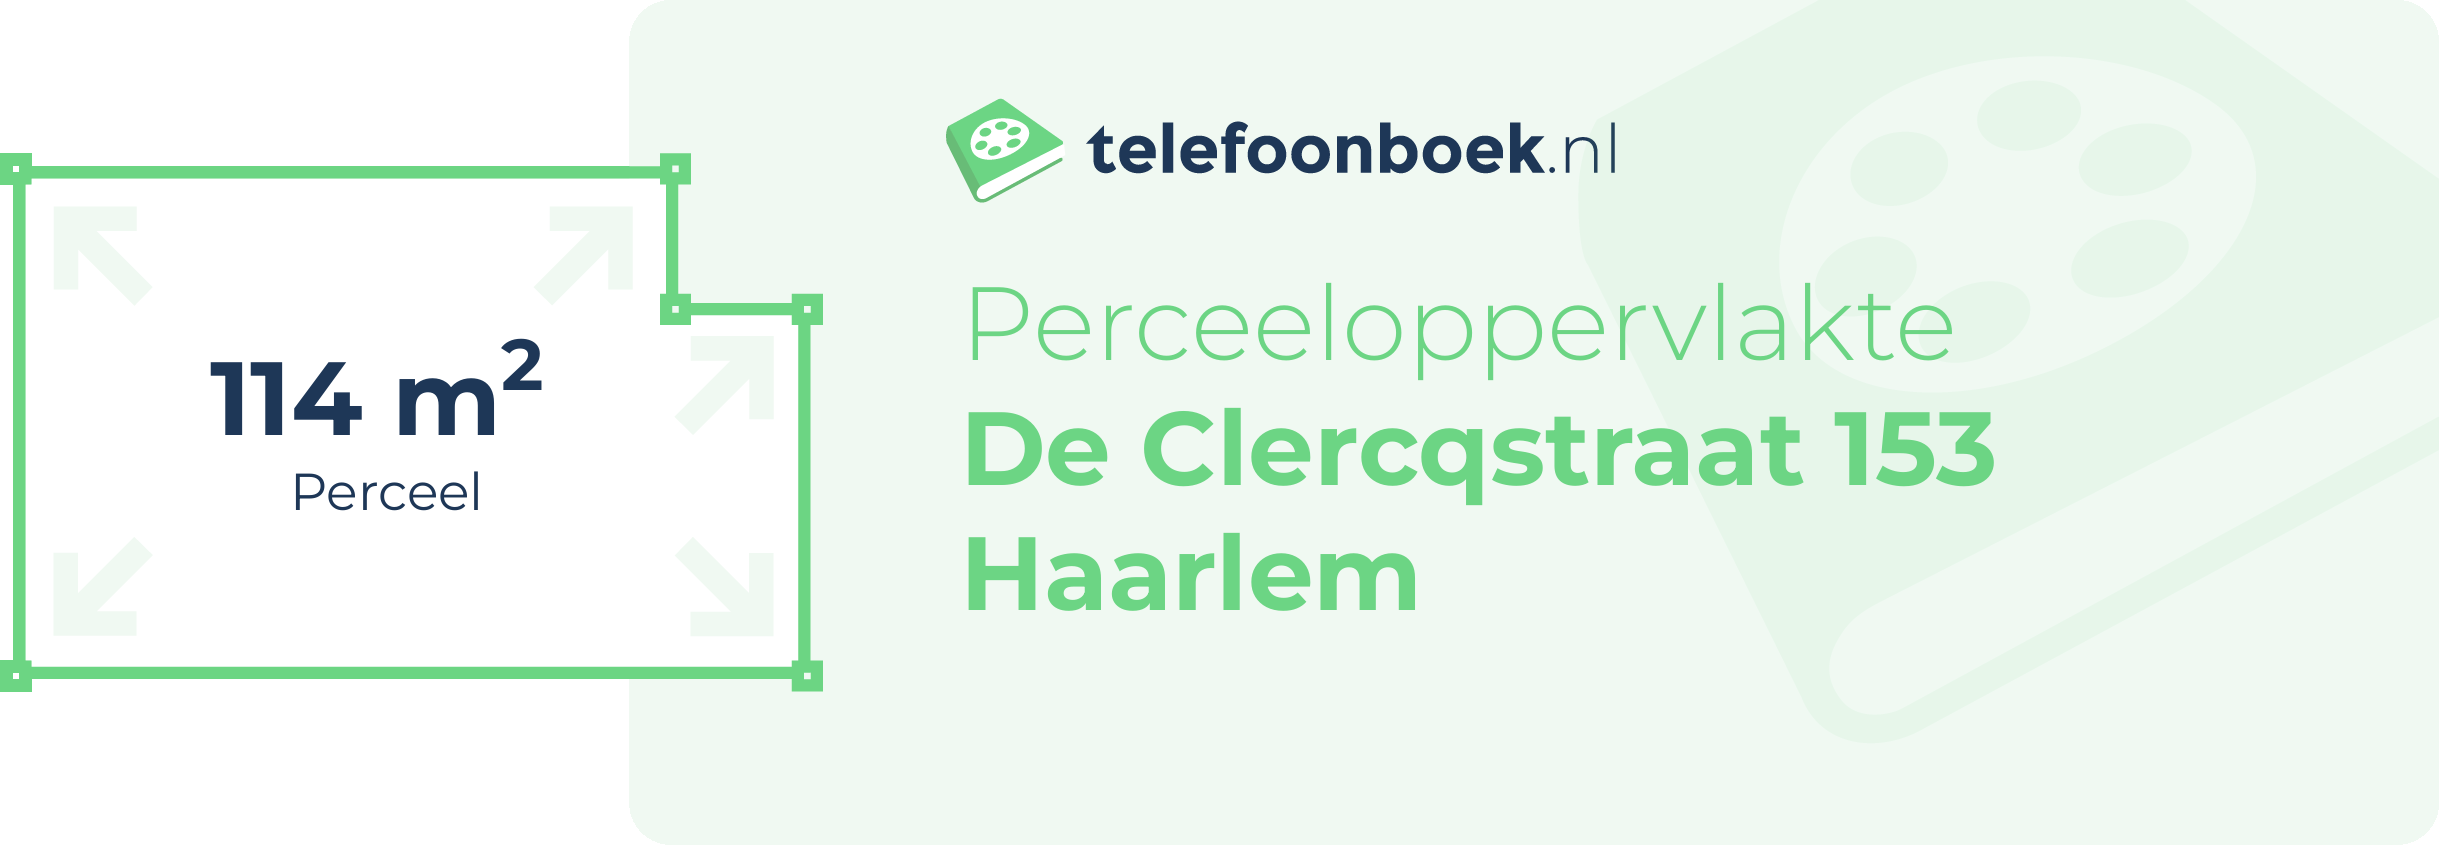 Perceeloppervlakte De Clercqstraat 153 Haarlem